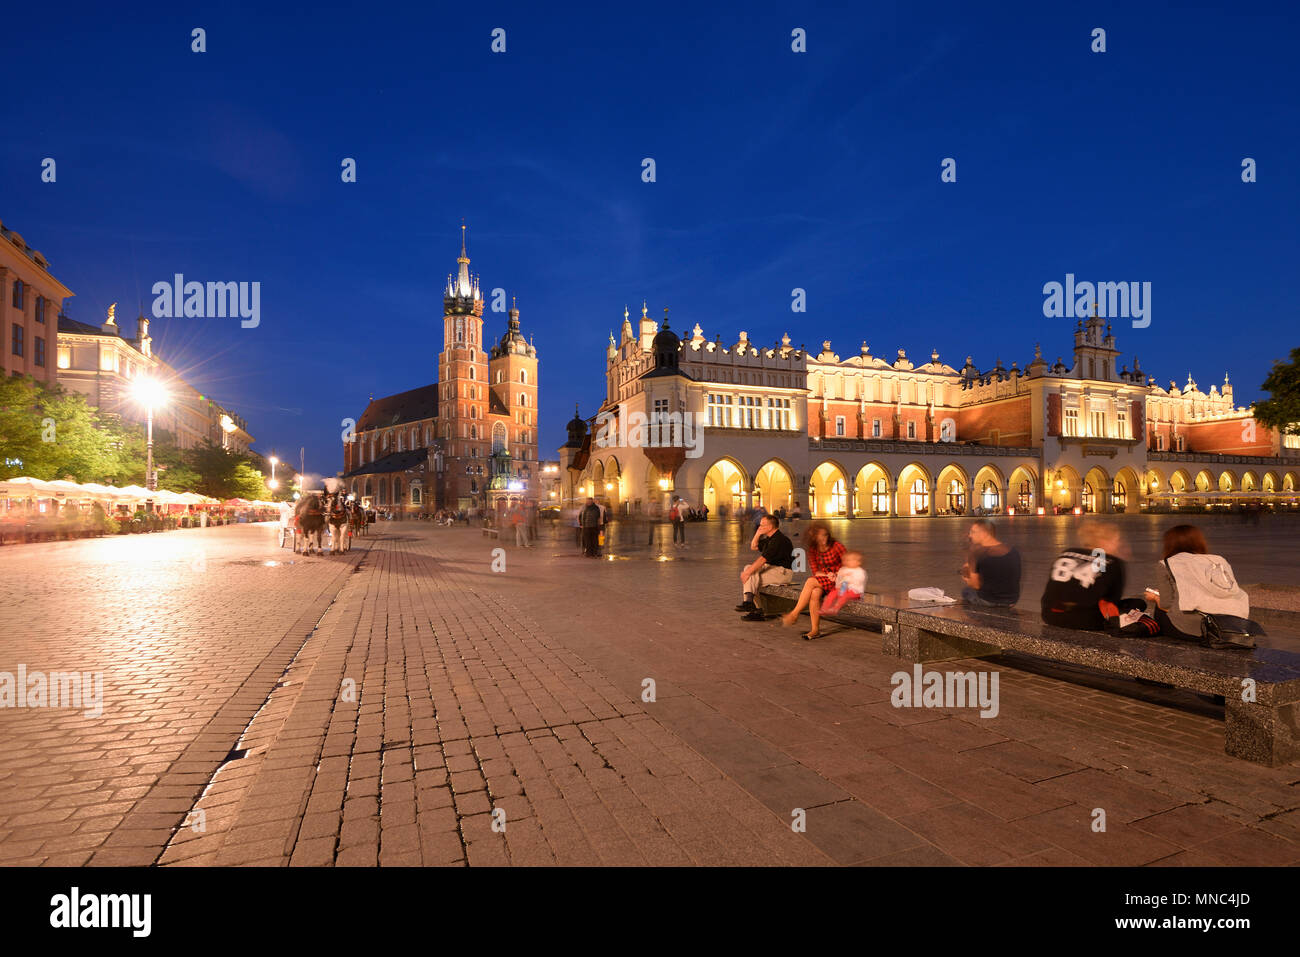 La place du marché (Rynek) de la vieille ville de Cracovie, Site du patrimoine mondial de l'Unesco. Cracovie, Pologne Banque D'Images